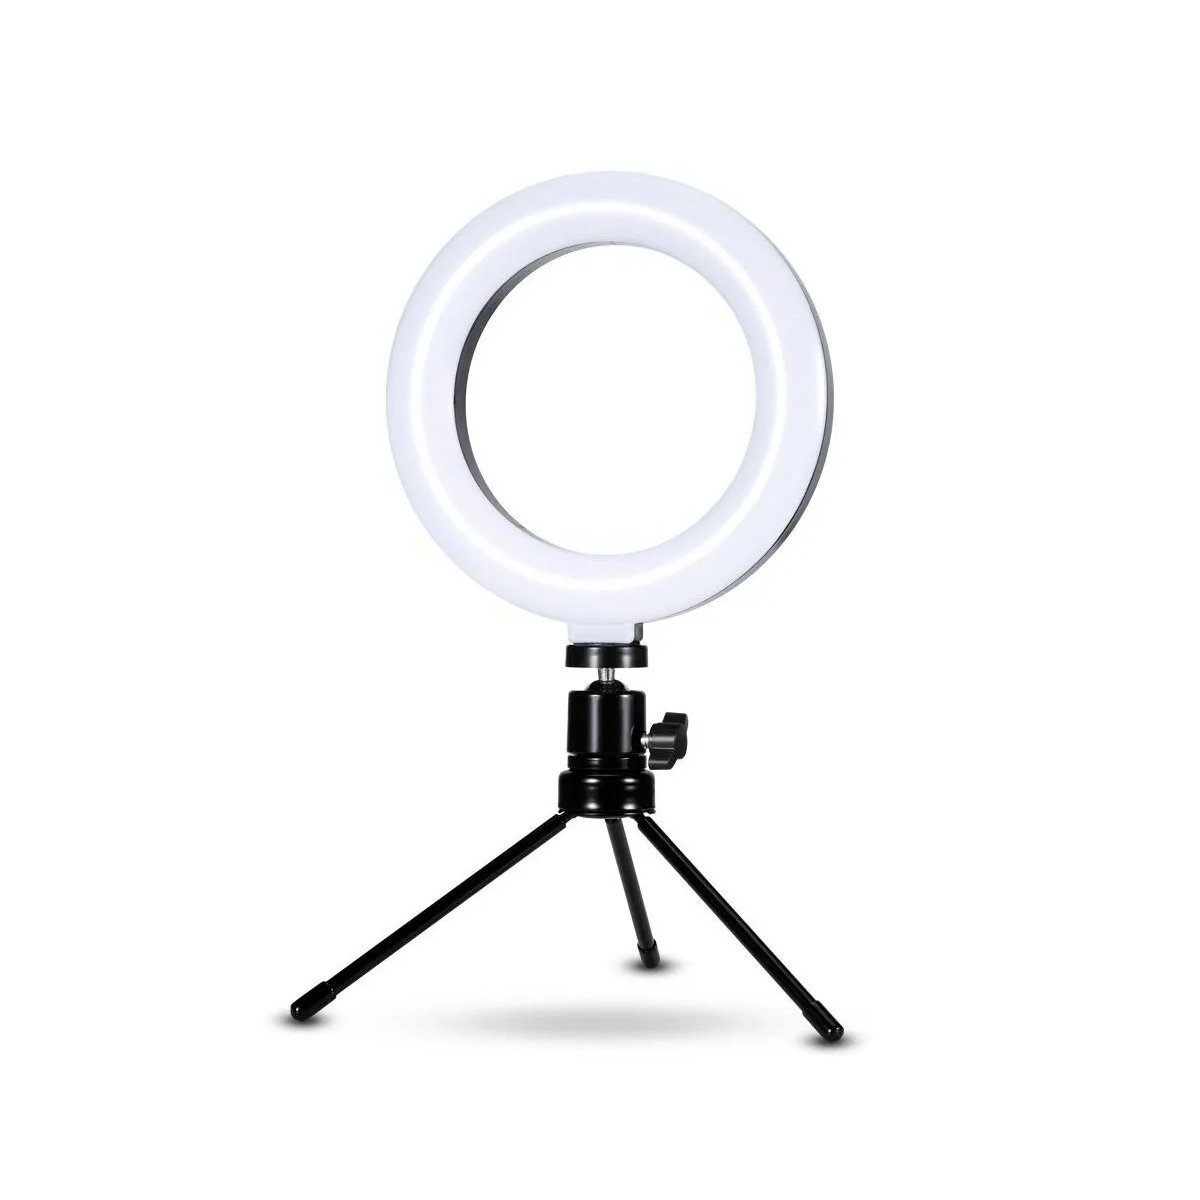 Iluminadores e Ring Lights - Virtual3000